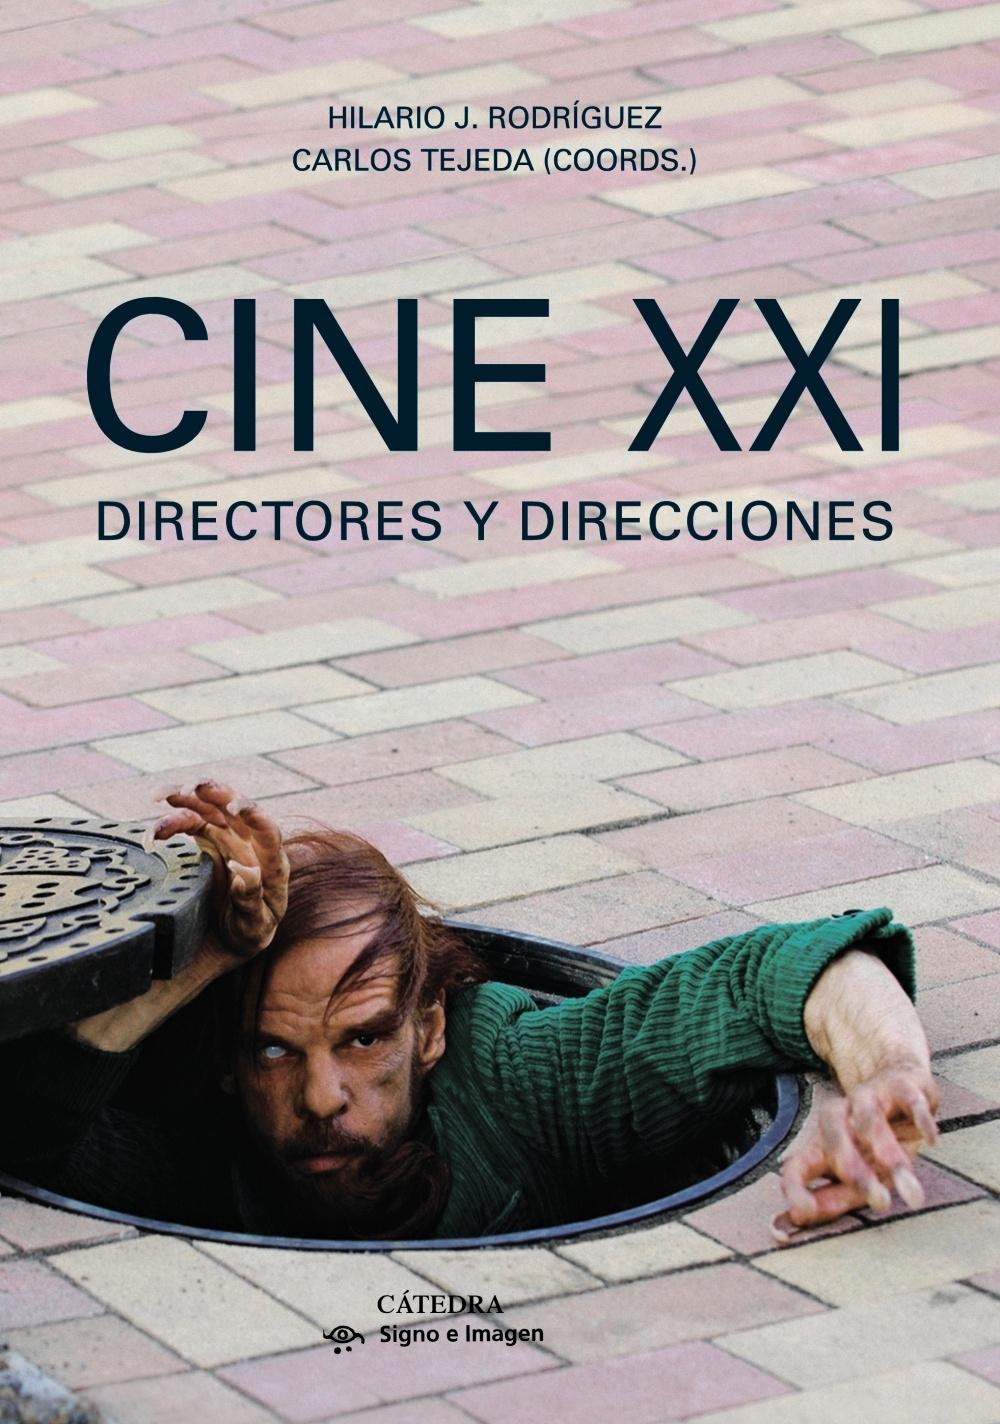 Cine XXI "Directores y direcciones"